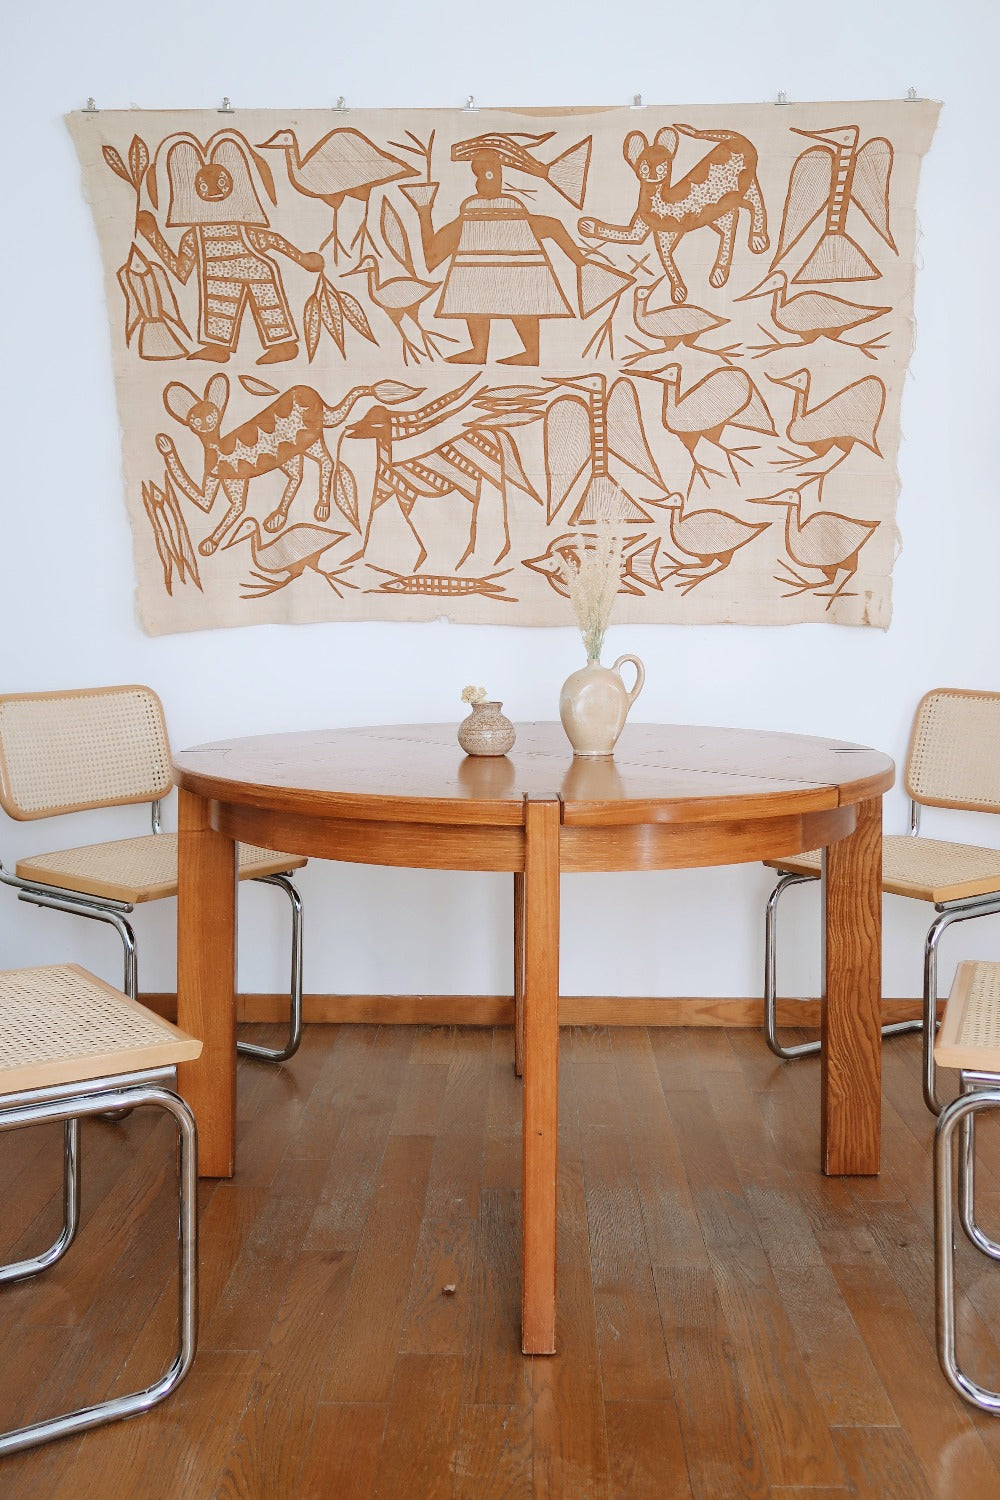 table ronde à manger rallonge extensible maison regain orme massif charlotte perriand pierre chapo vintage brutaliste bois roche bobois